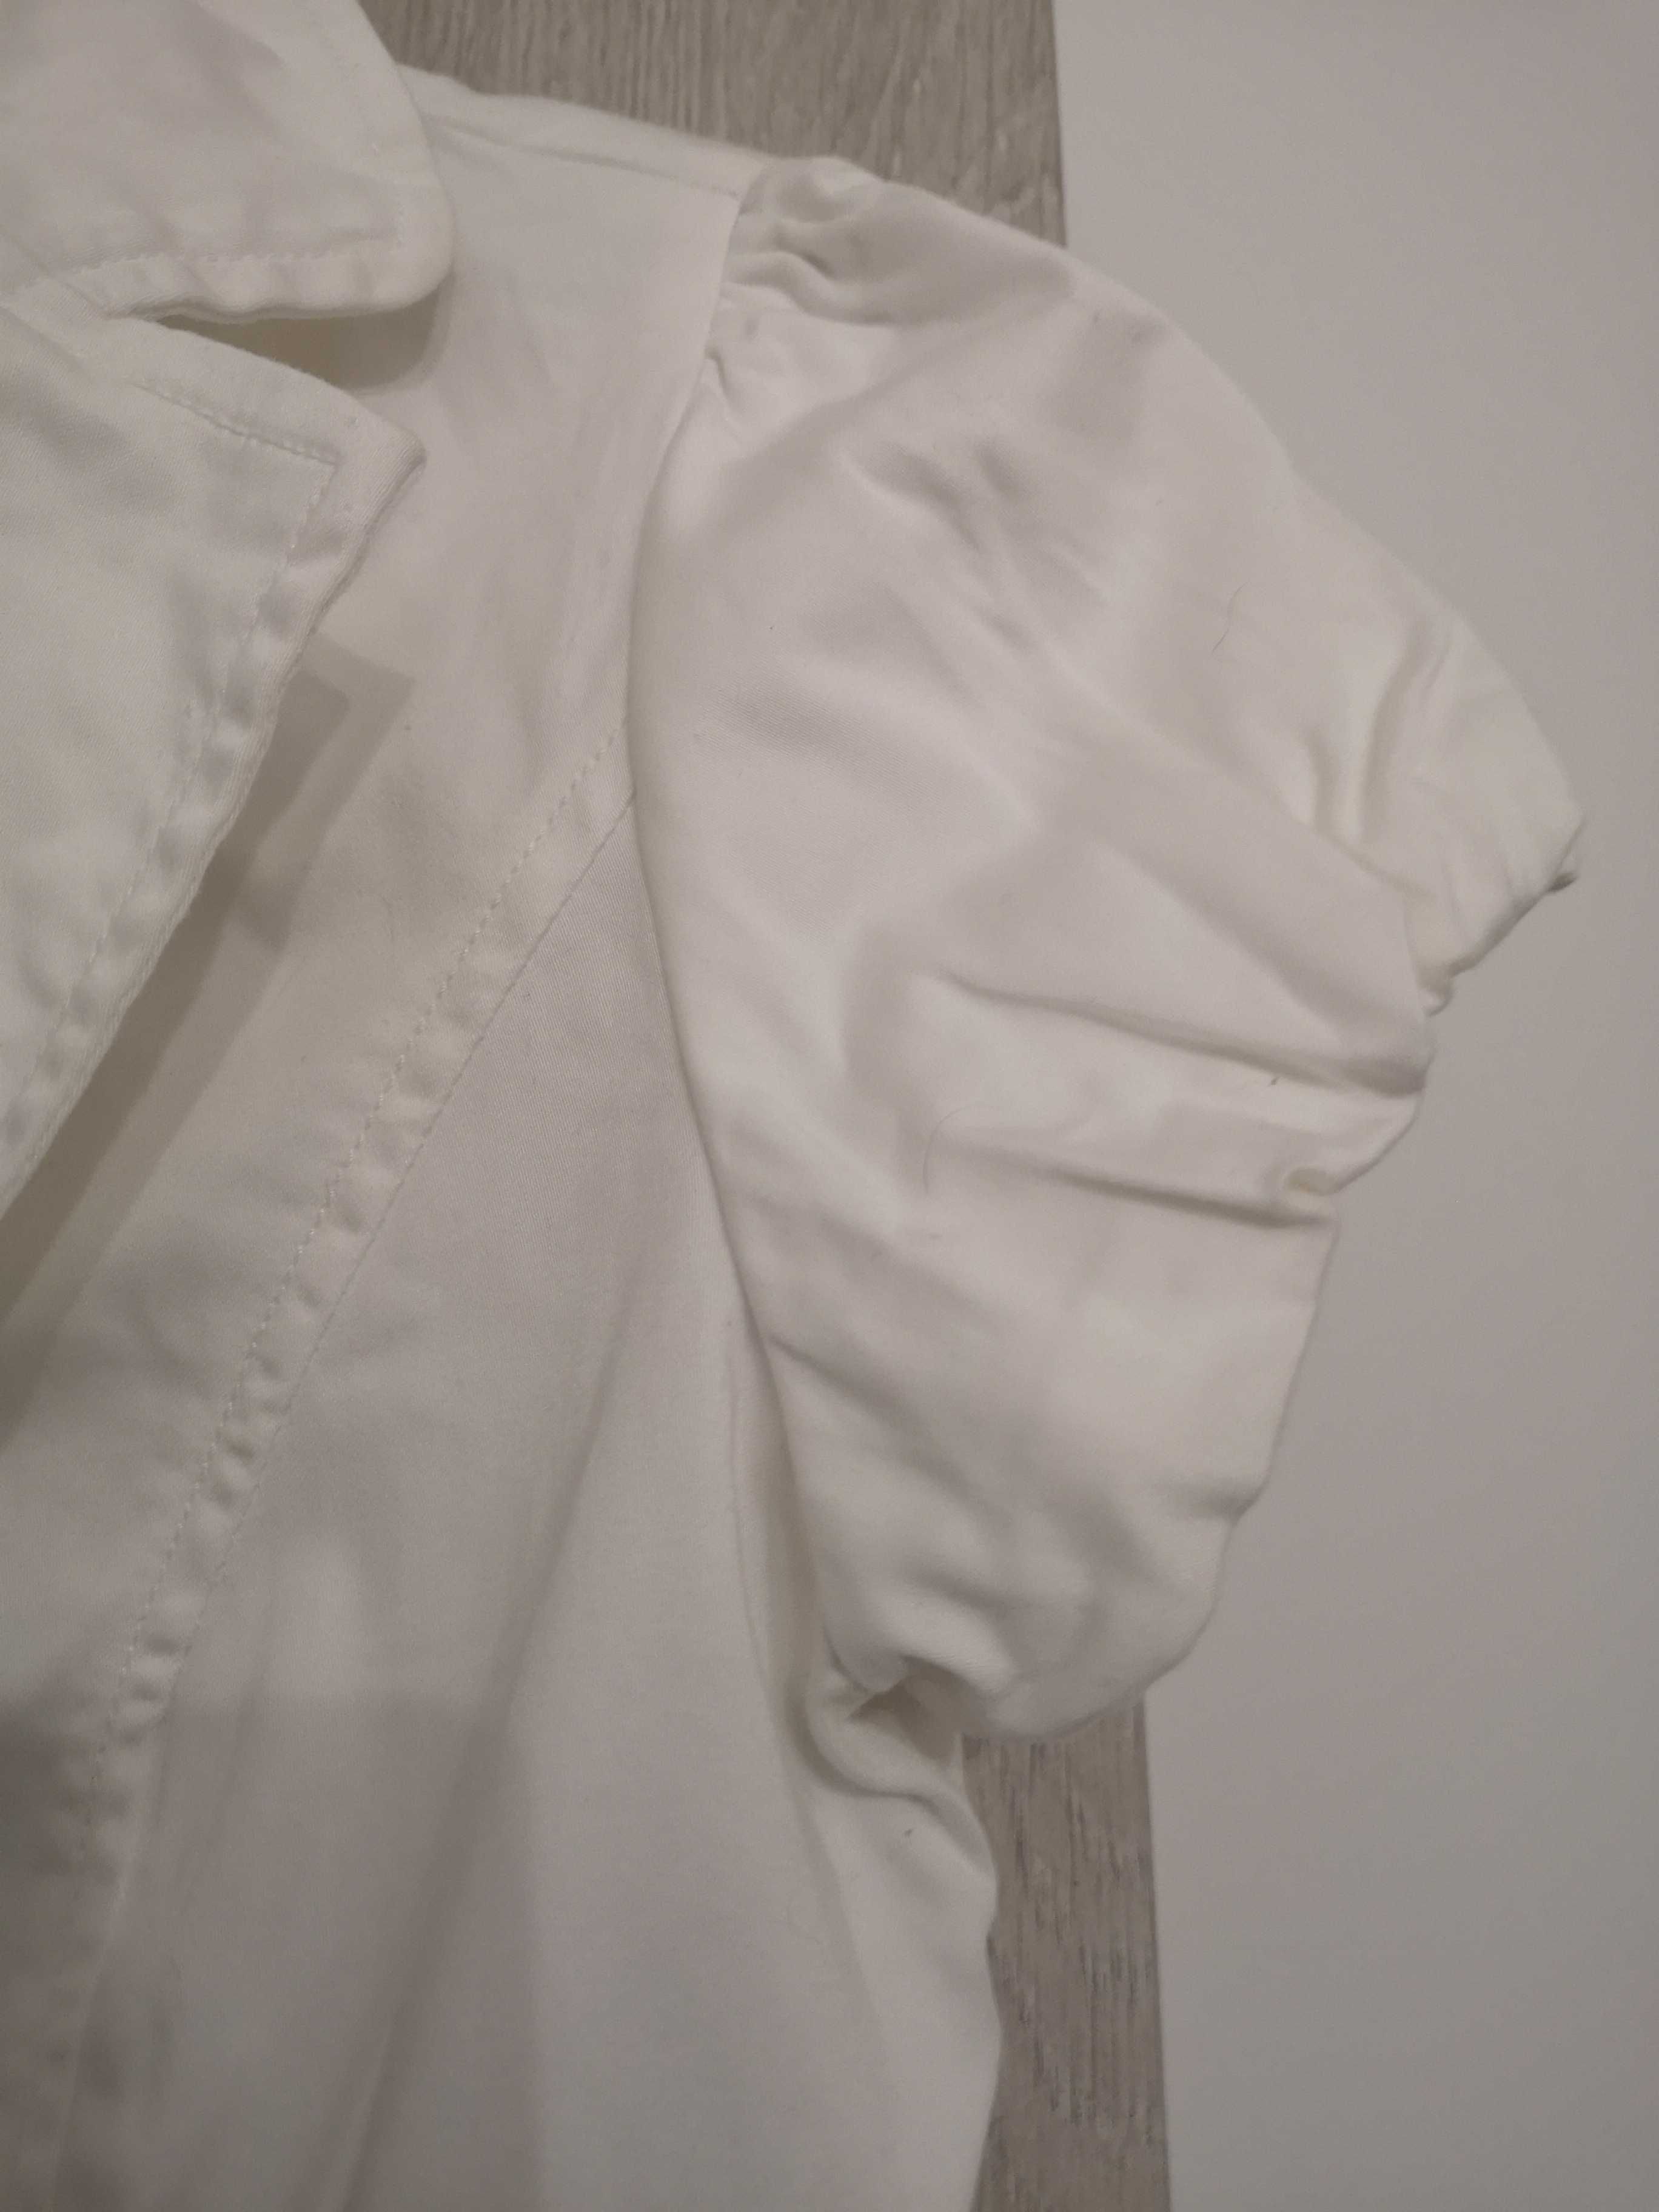 Śliczny biały żakiecik marki Orsay